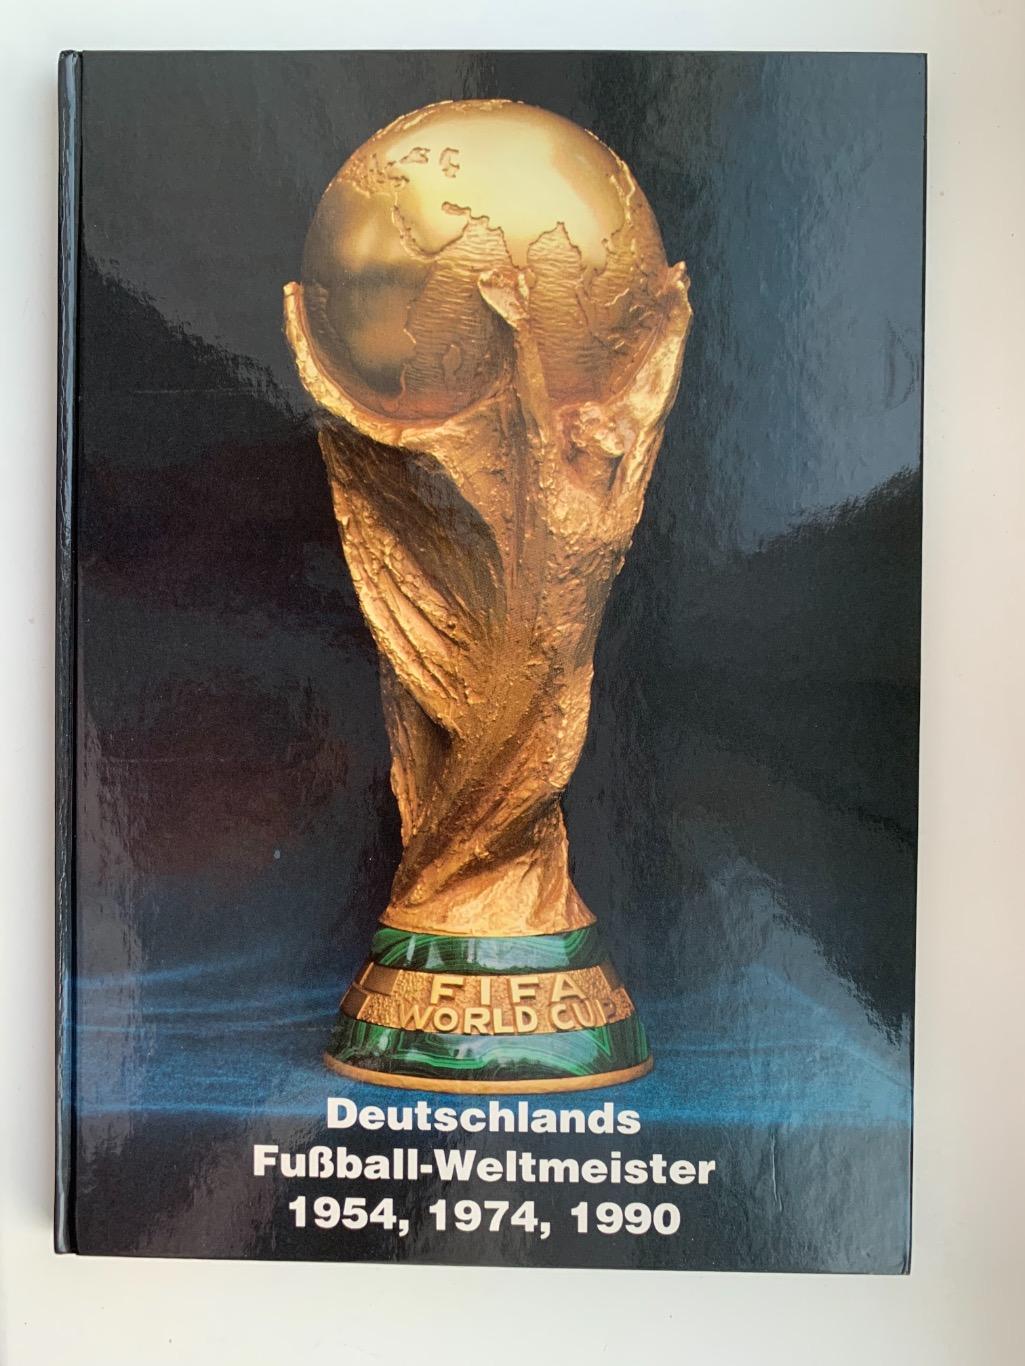 Сборная Германии история игроков участников чемпионата мира!